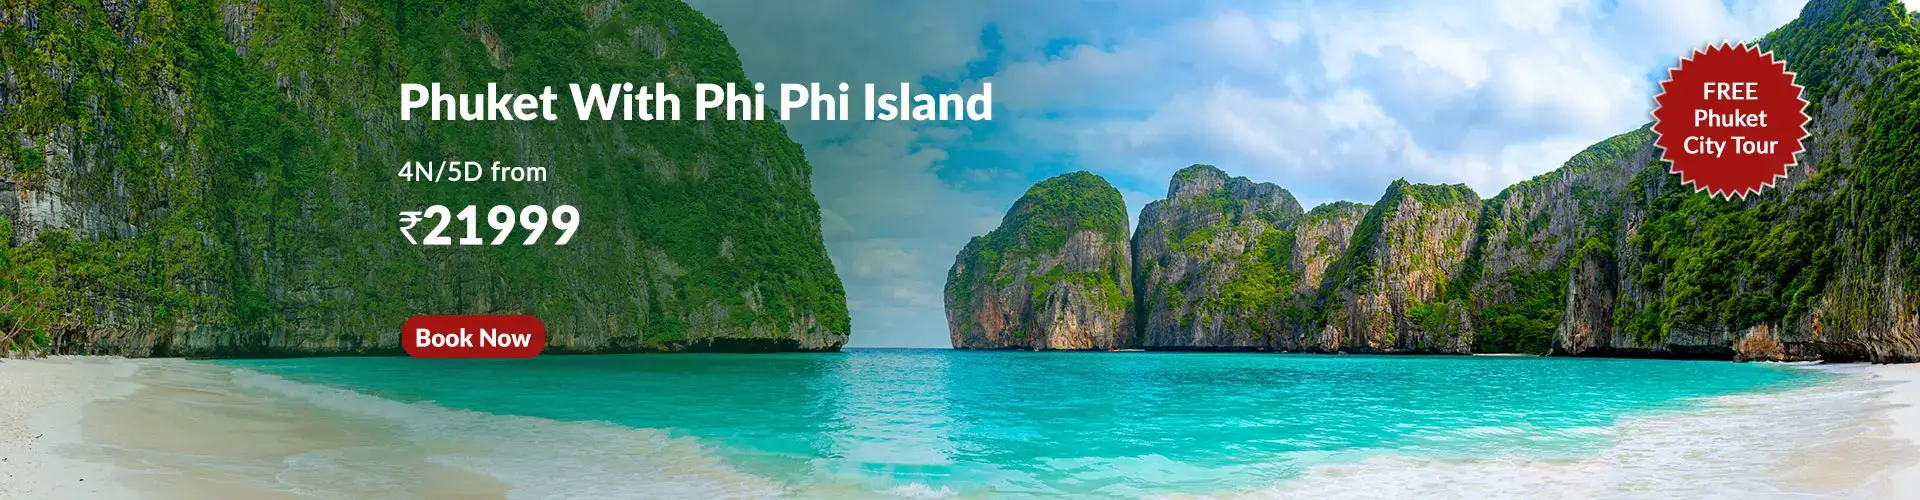 phuket-phi-phi-island